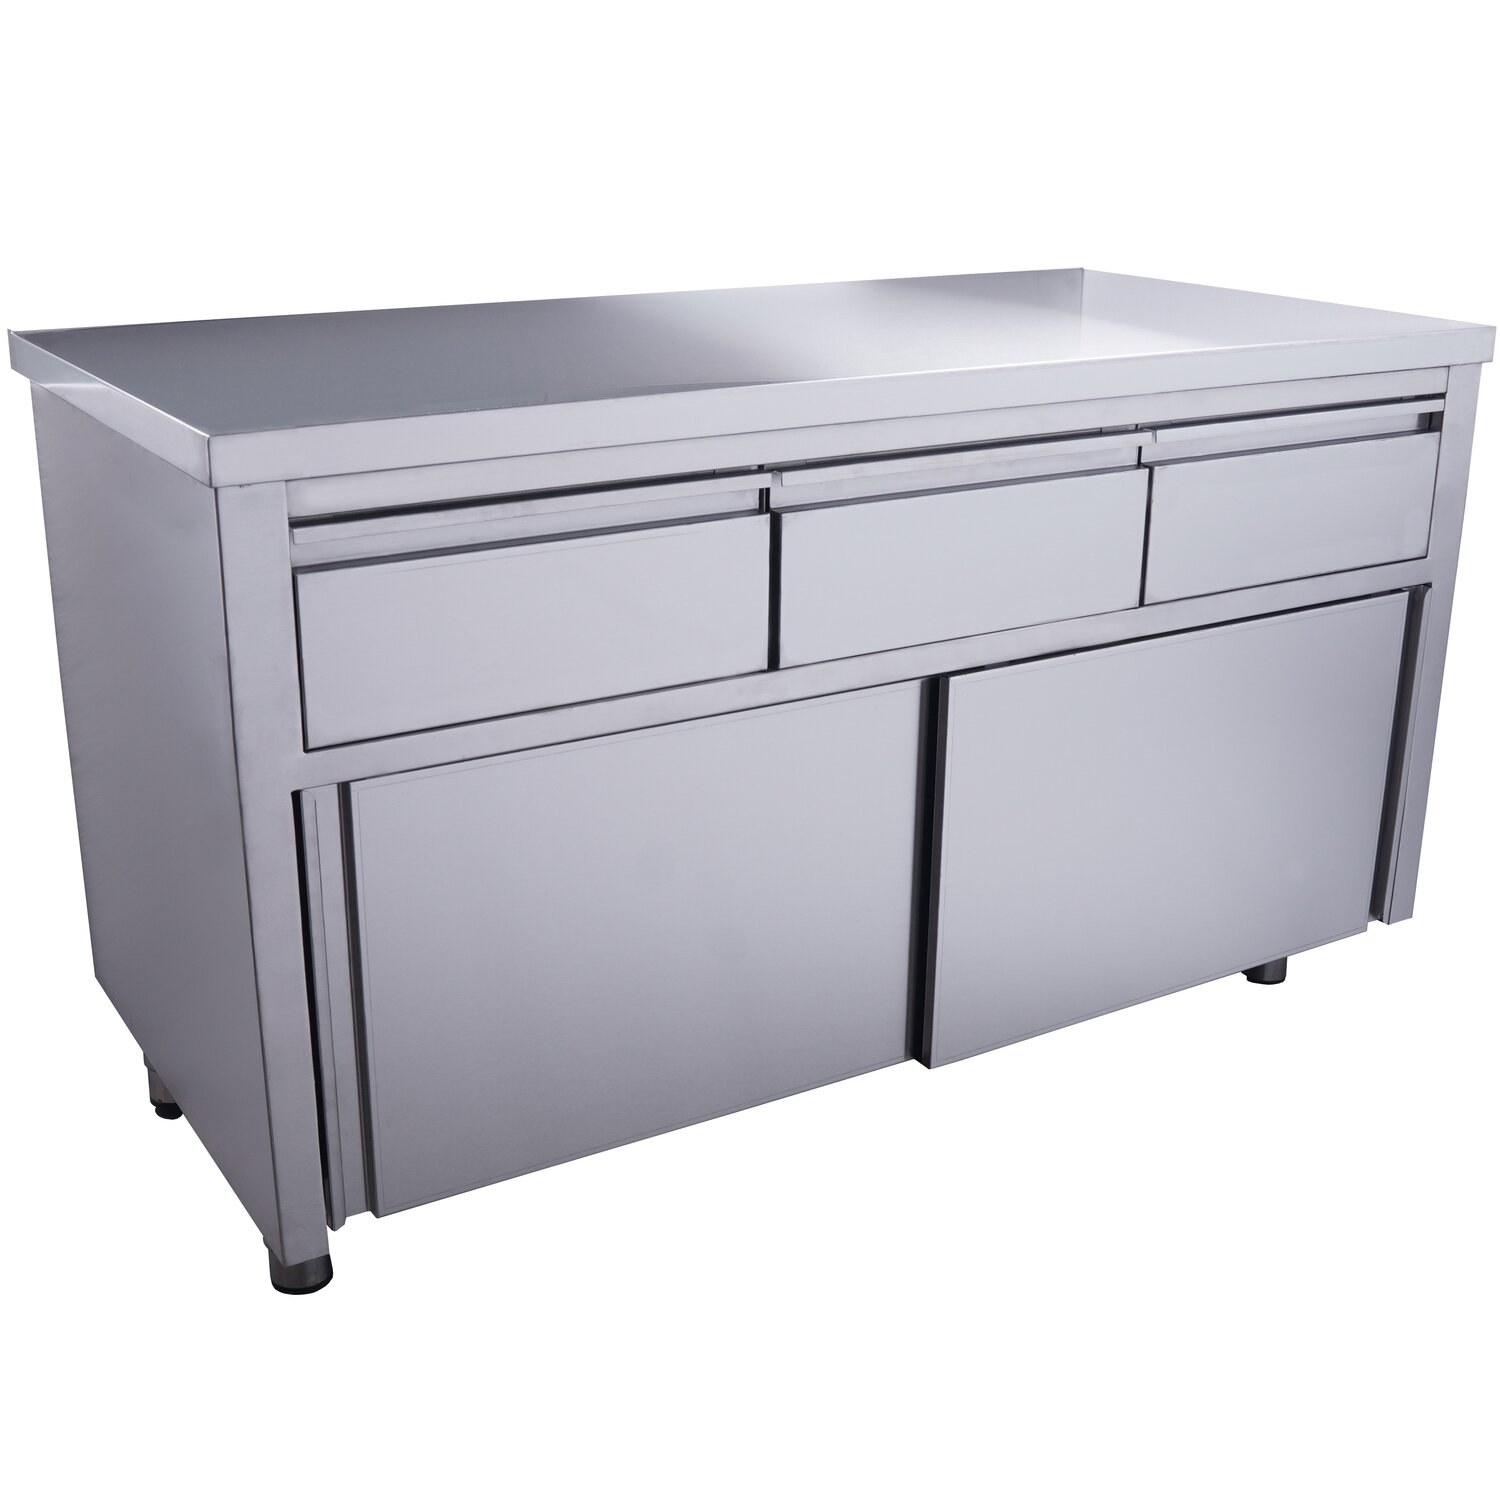 SARO Sliding door cabinet - 3 drawers 1400X700mm